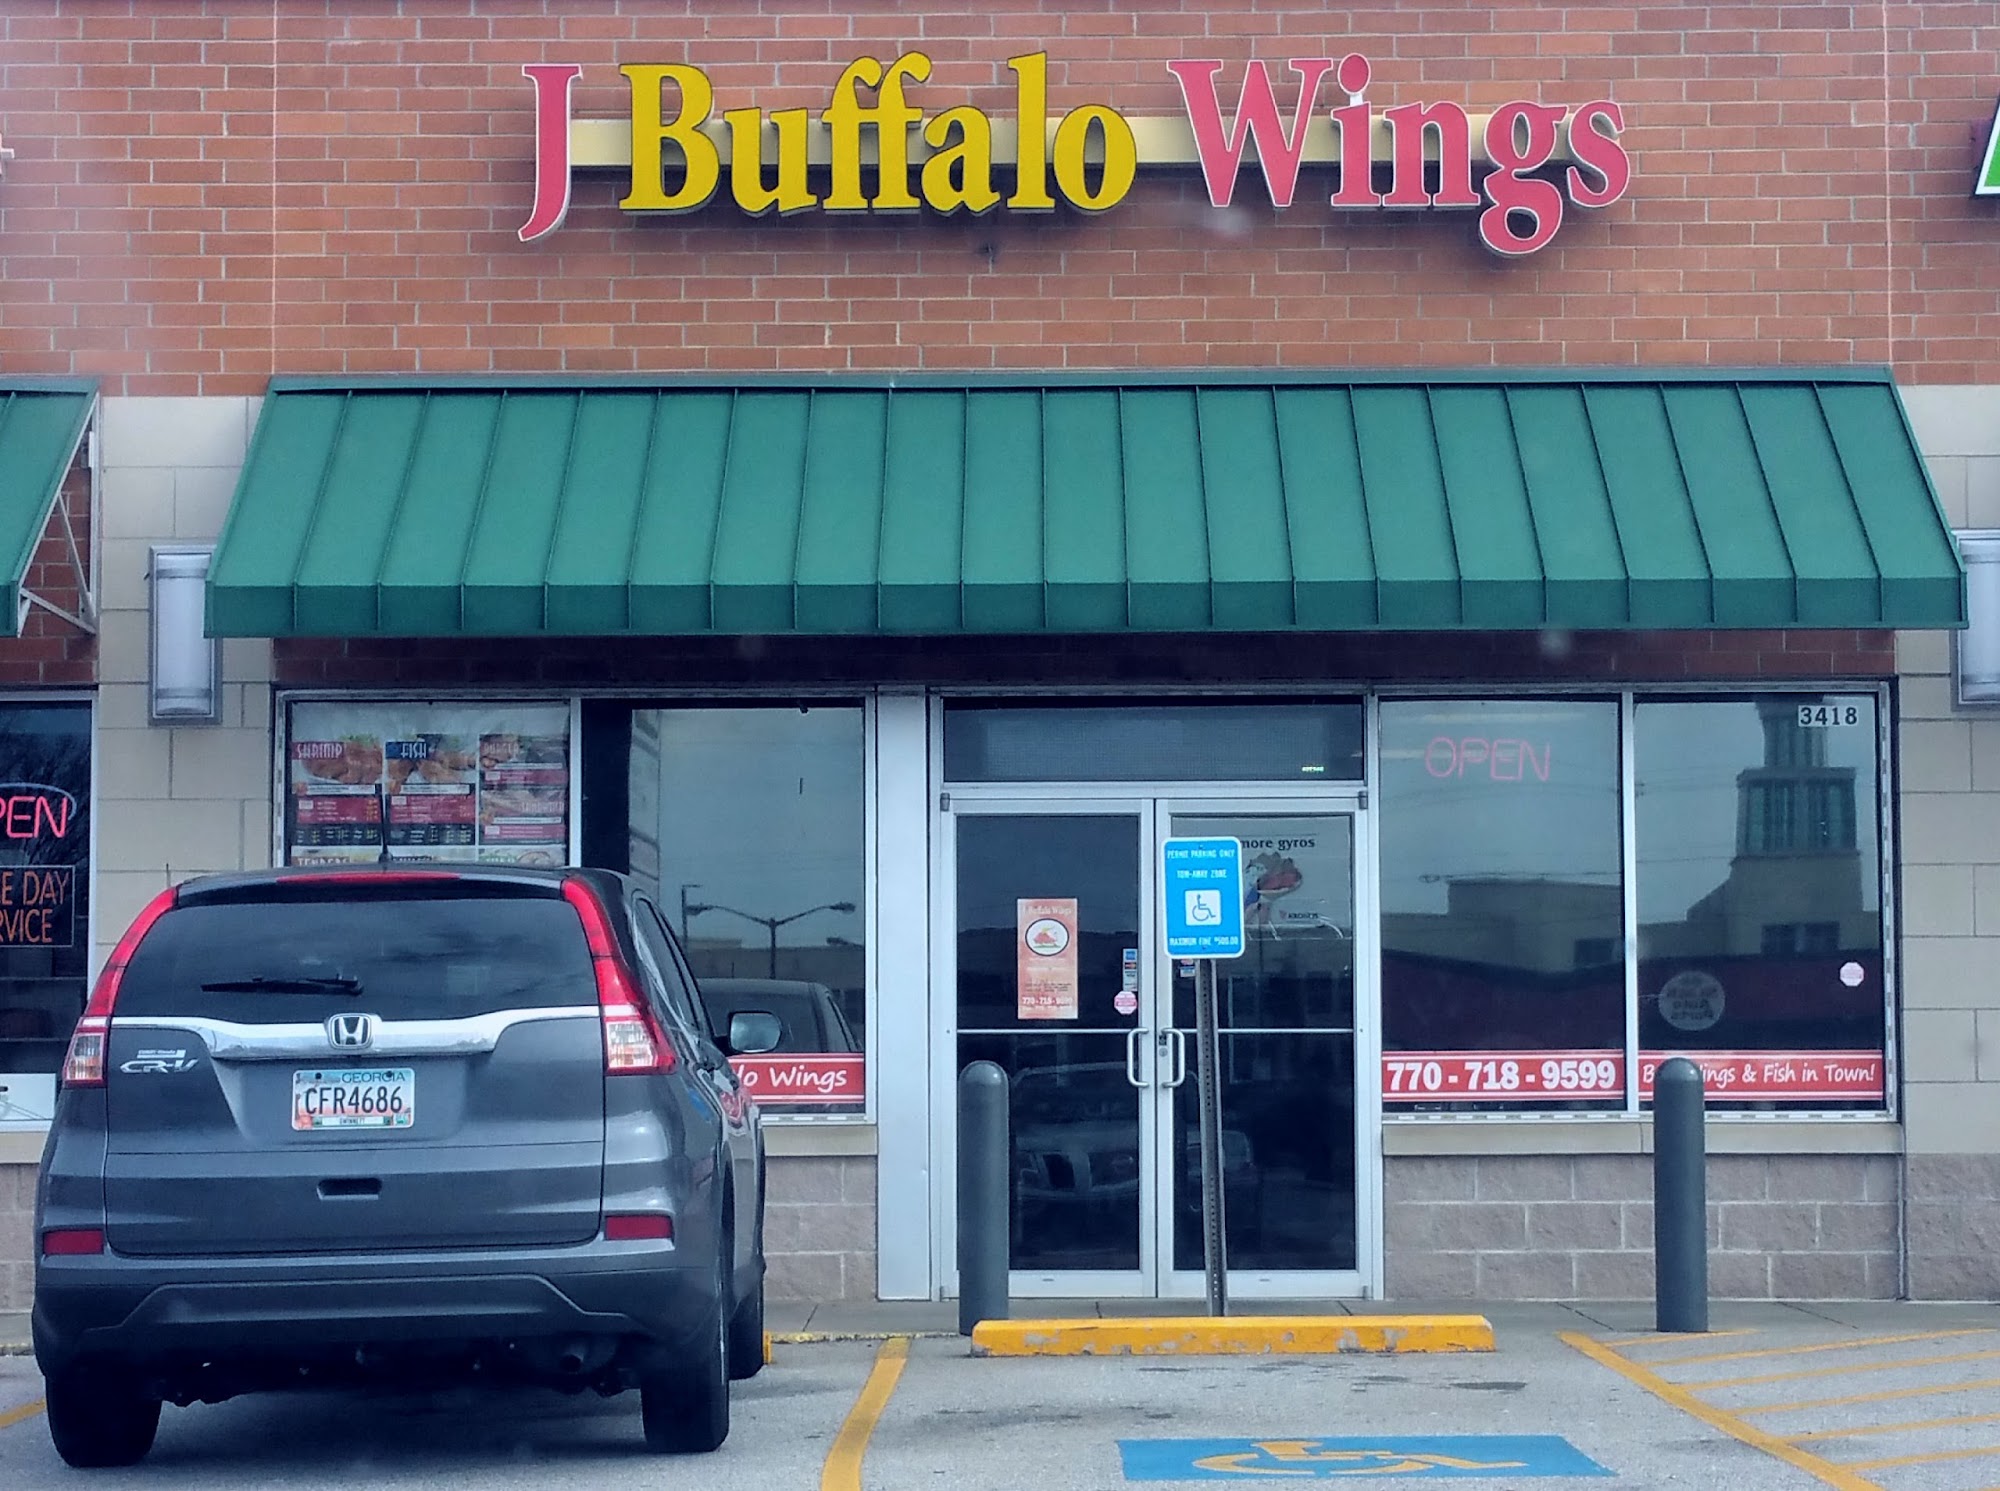 J.Buffalo Wings